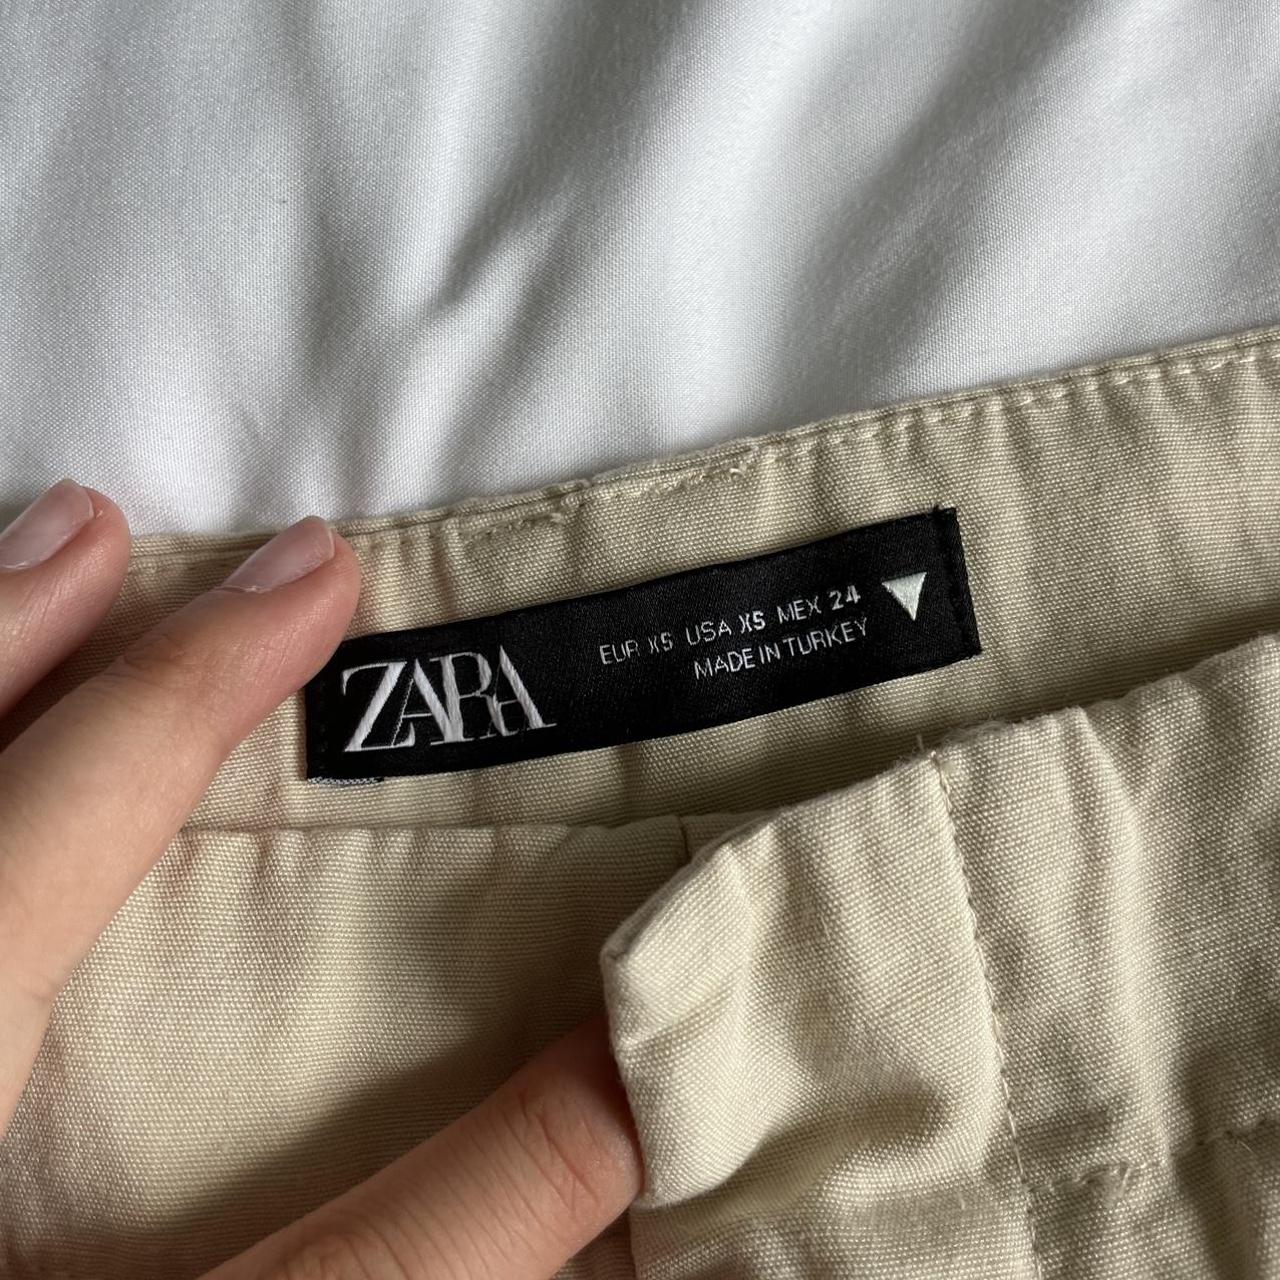 Zara pants Size xs Never worn Cute double belt - Depop